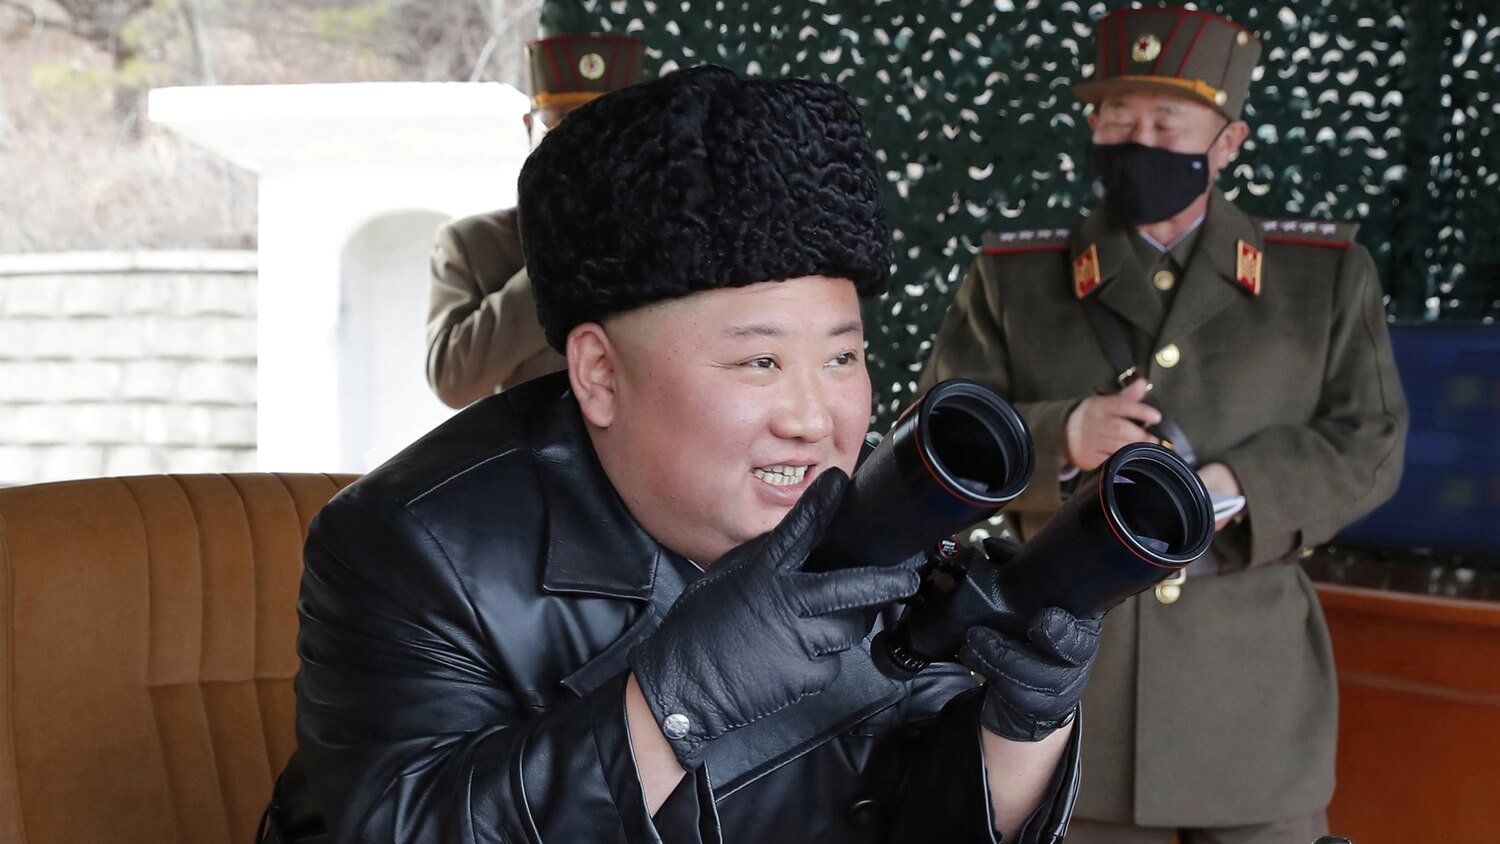 Северная корея смешные